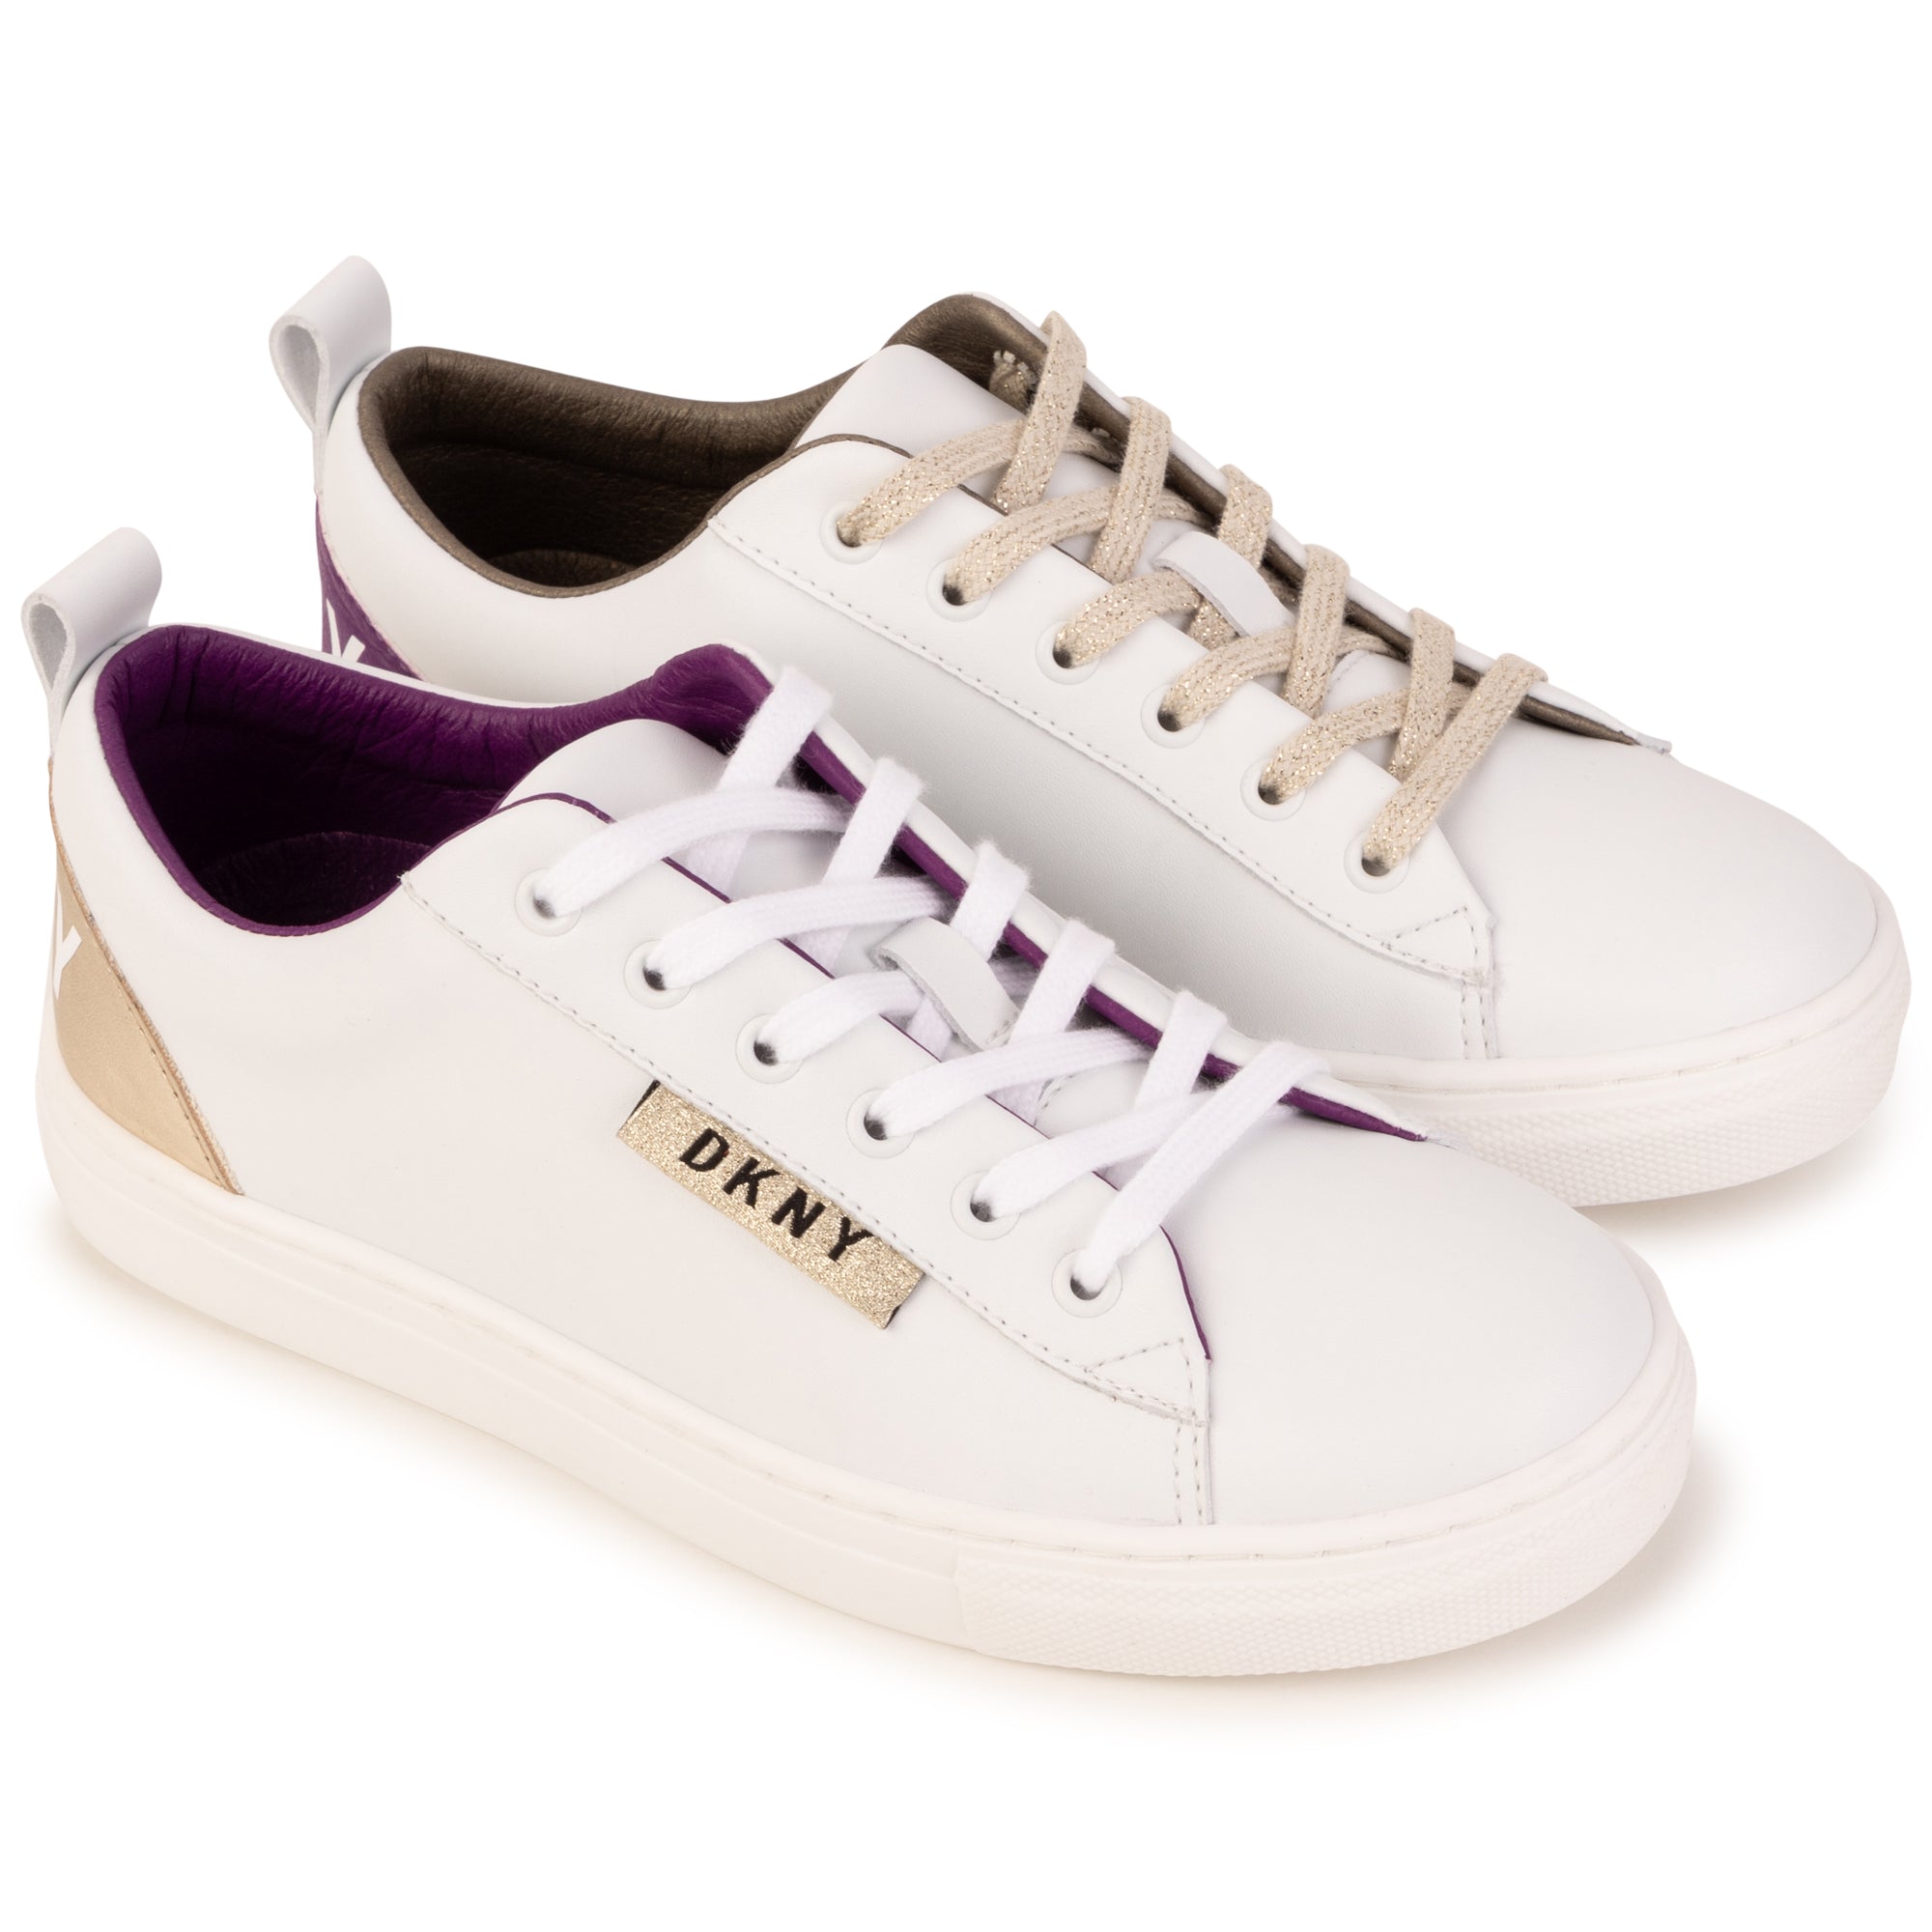 DKNY TENNIS SHOES | Tennis shoes, Shoes, Dkny